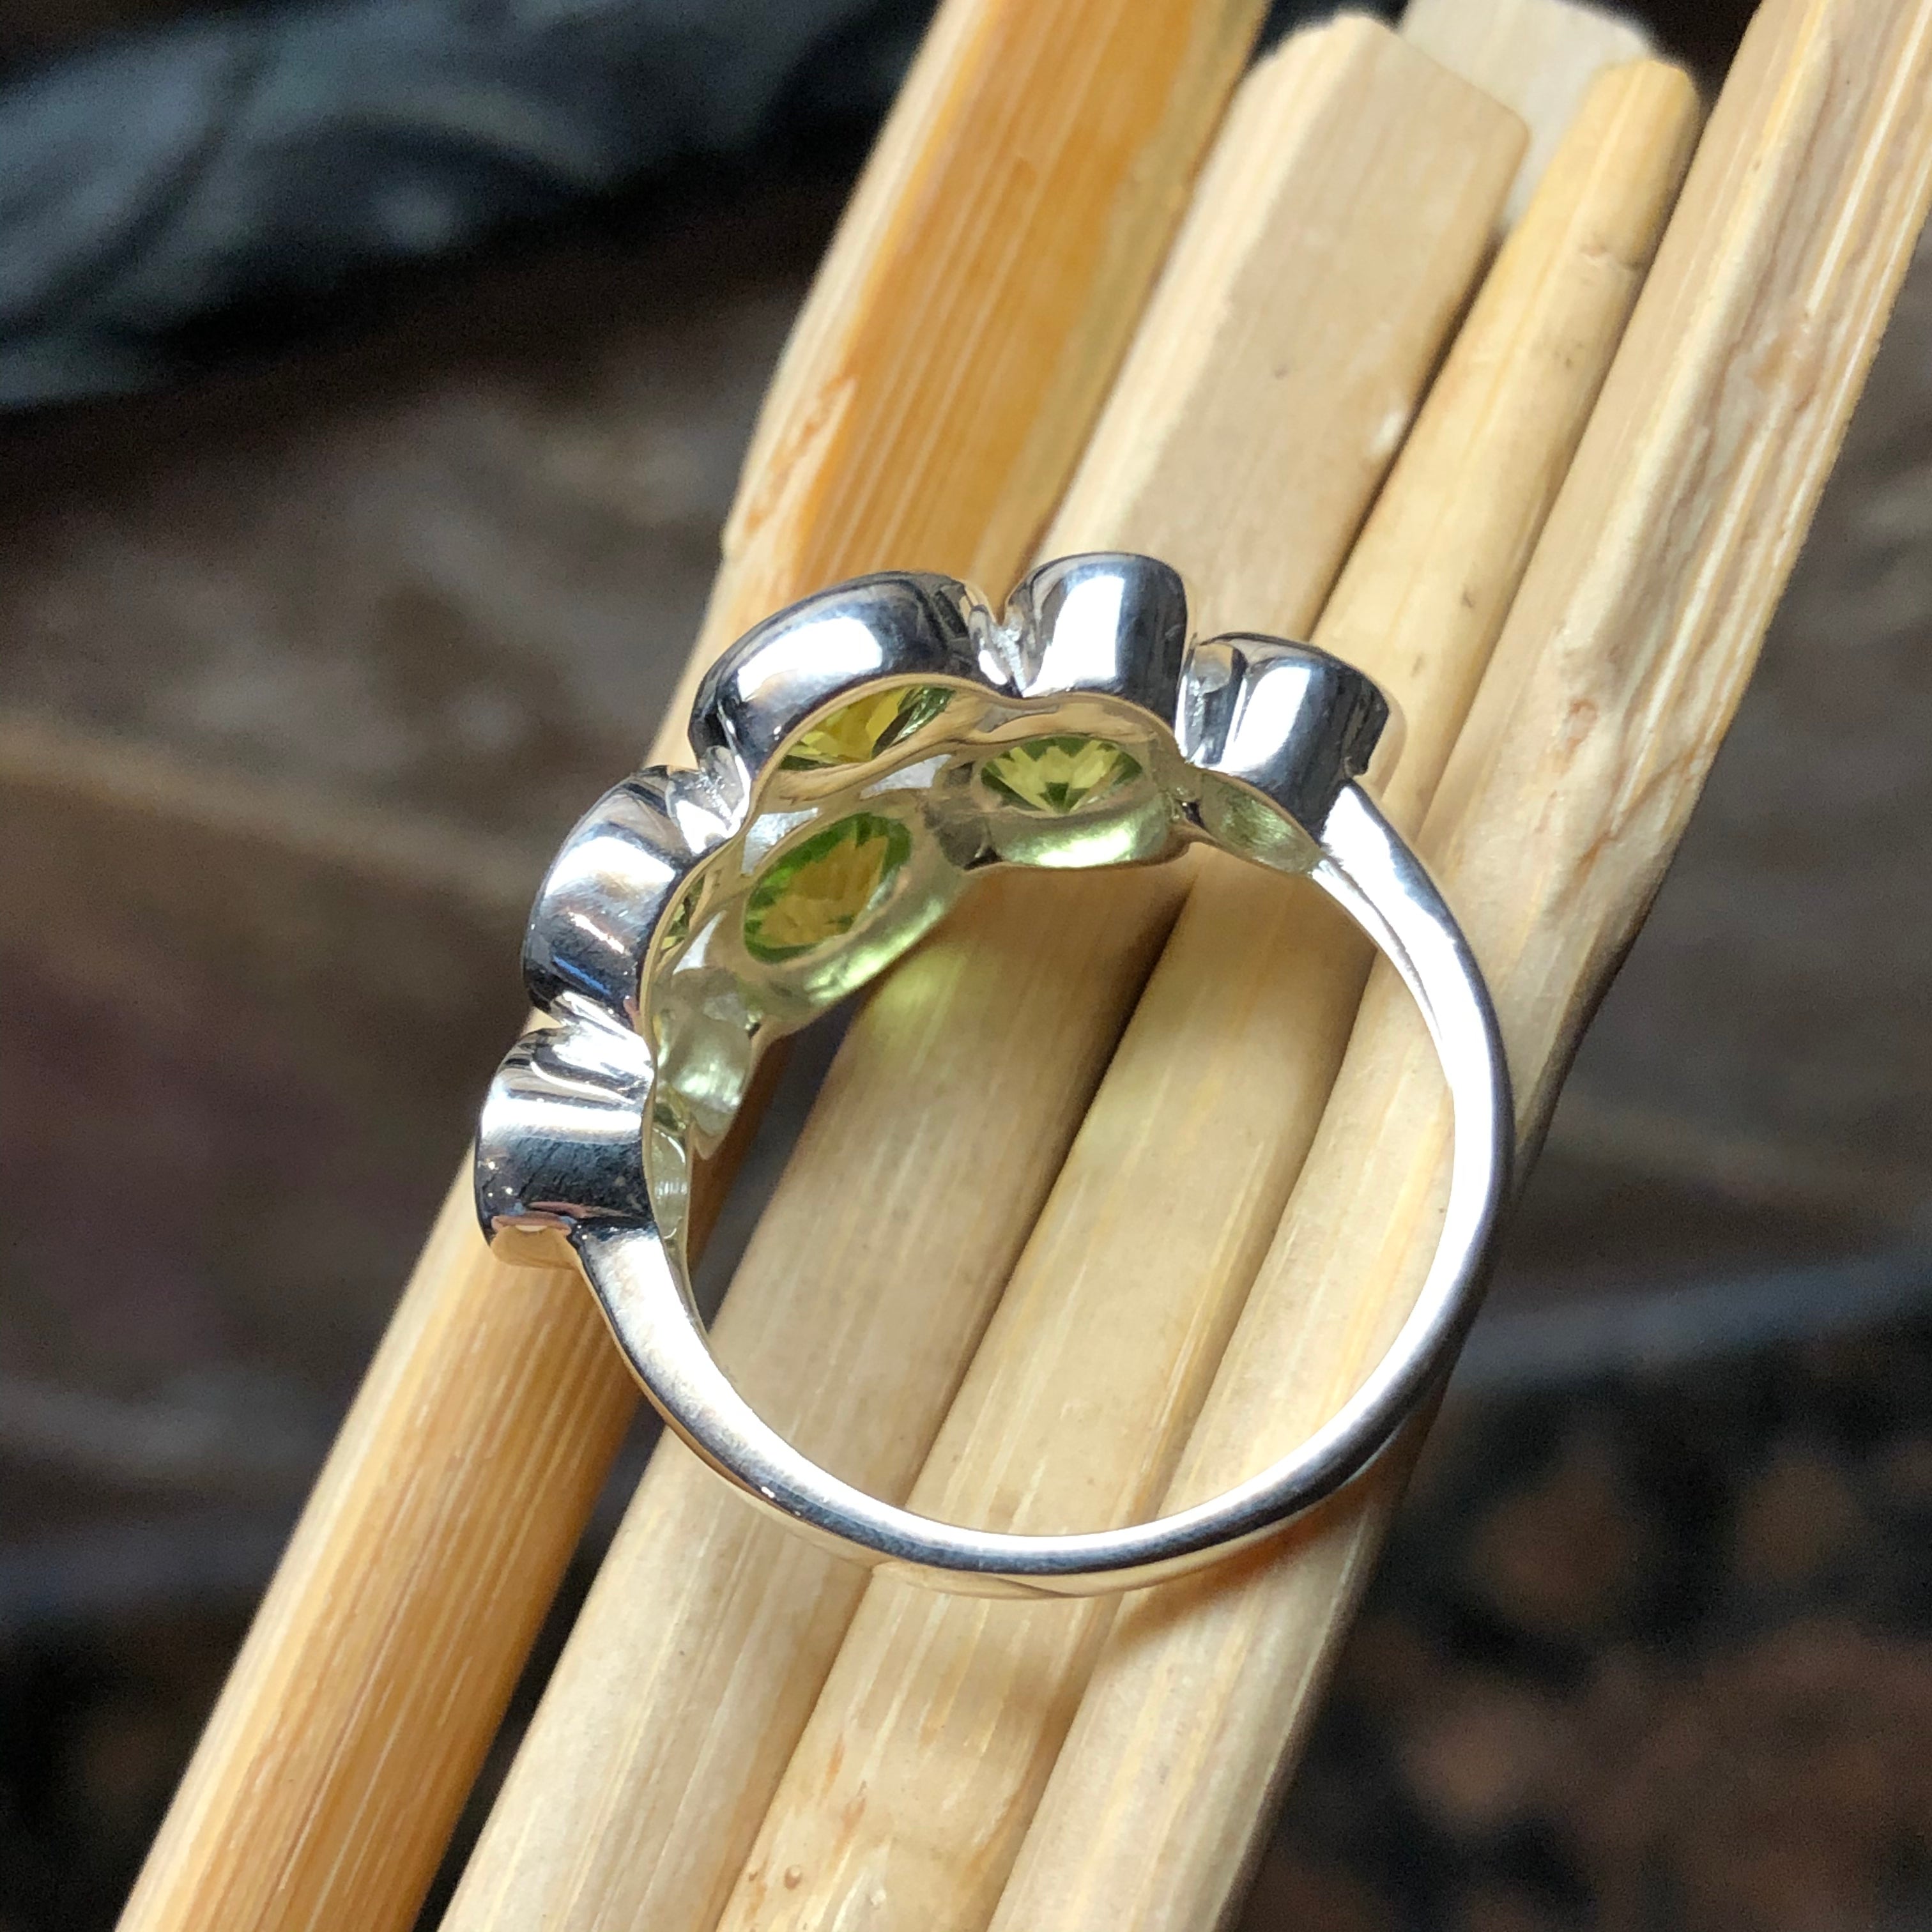 Natural 4ct Peridot 925 Solid Sterling Silver Wedding Ring Size 6, 7, 8, 9 - Natural Rocks by Kala